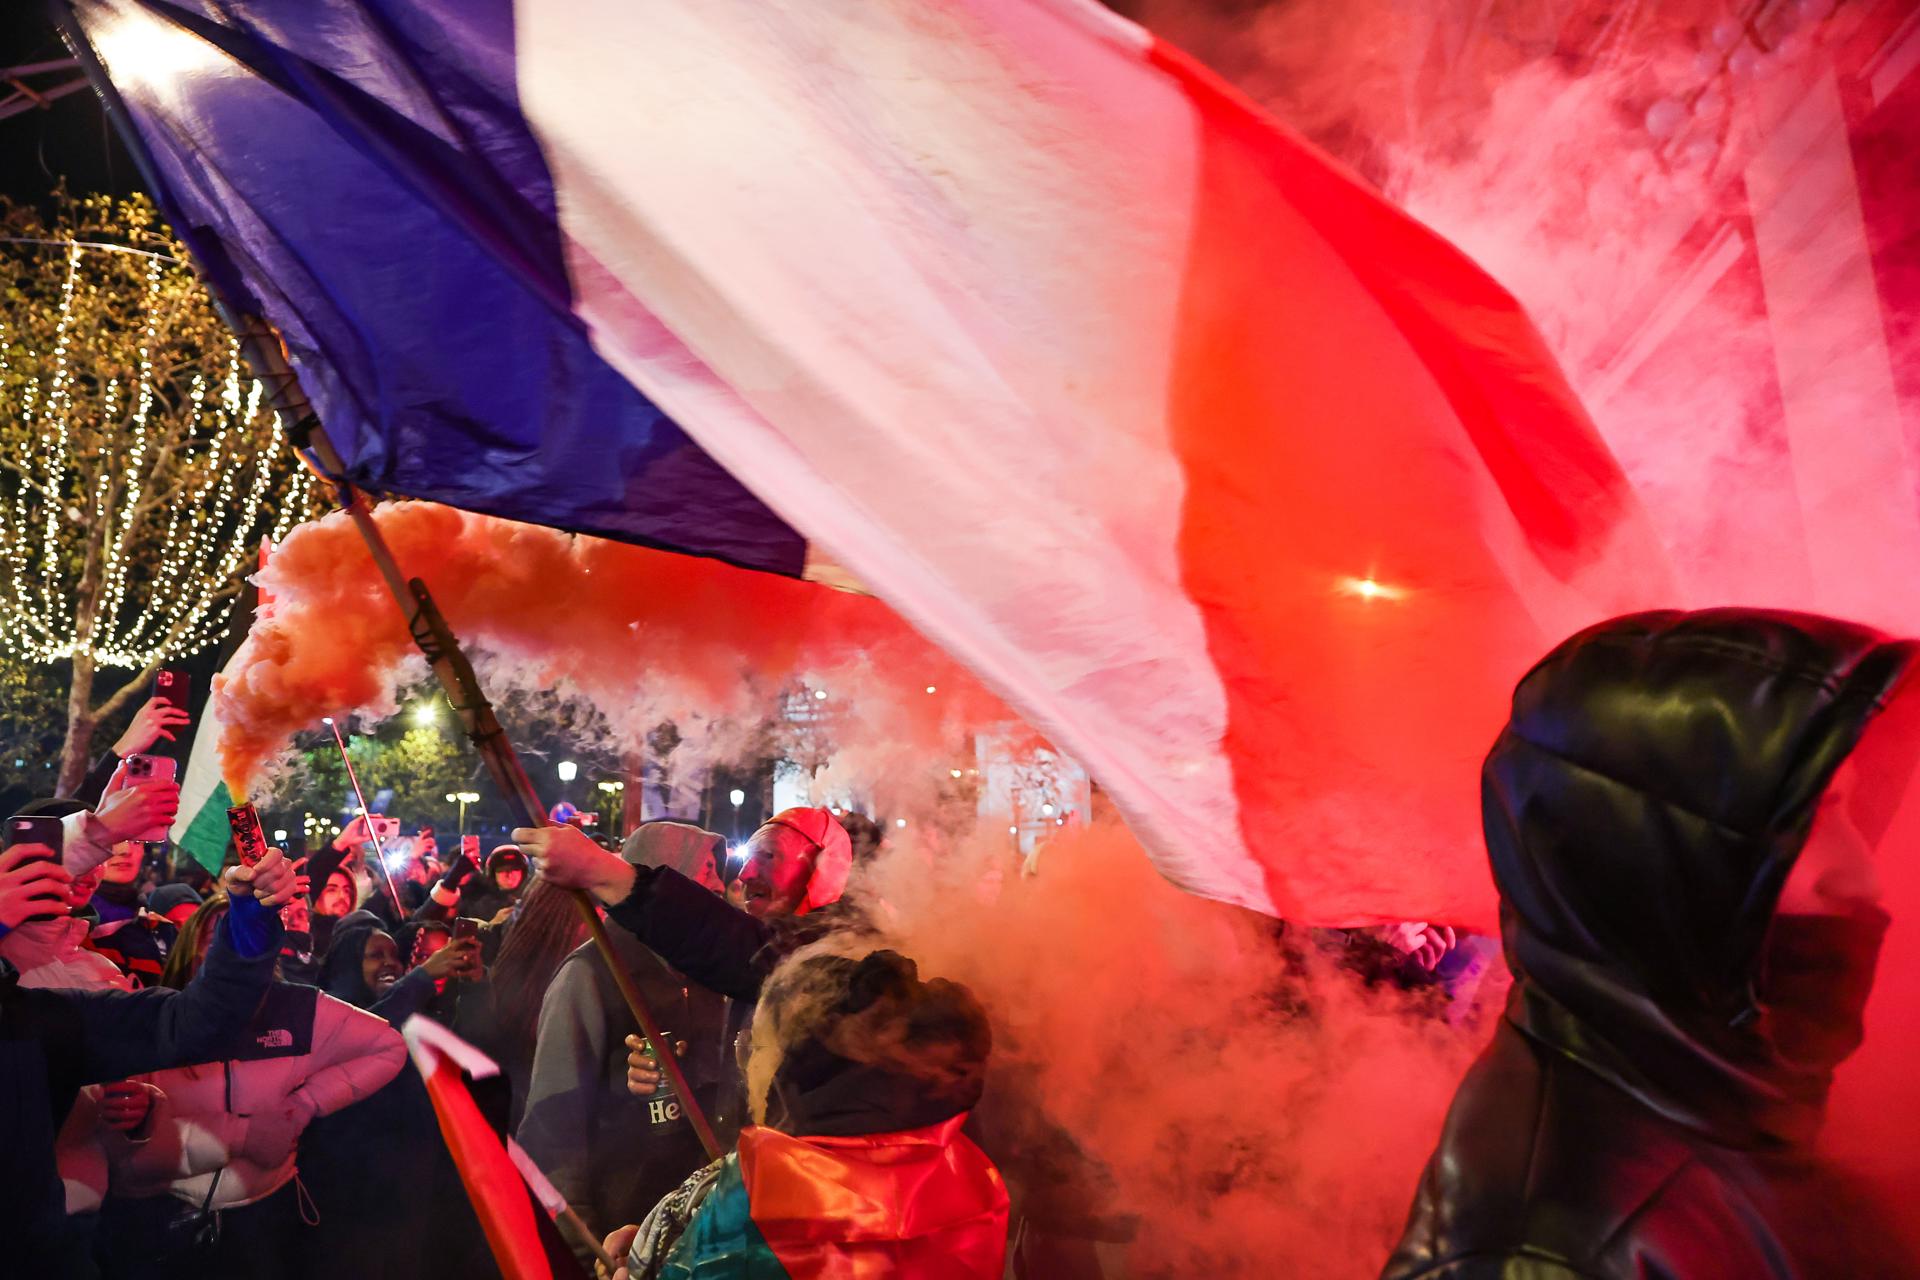 París (Francia), 14/12/2022.- Los aficionados celebran después de que Francia ganara la semifinal de la Copa Mundial de la FIFA 2022 contra Marruecos en los Campos Elíseos de París, Francia, el 14 de diciembre de 2022. (Mundial de Fútbol, Francia, Marruecos) EFE/EPA/CHRISTOPHE PETIT TESSON.